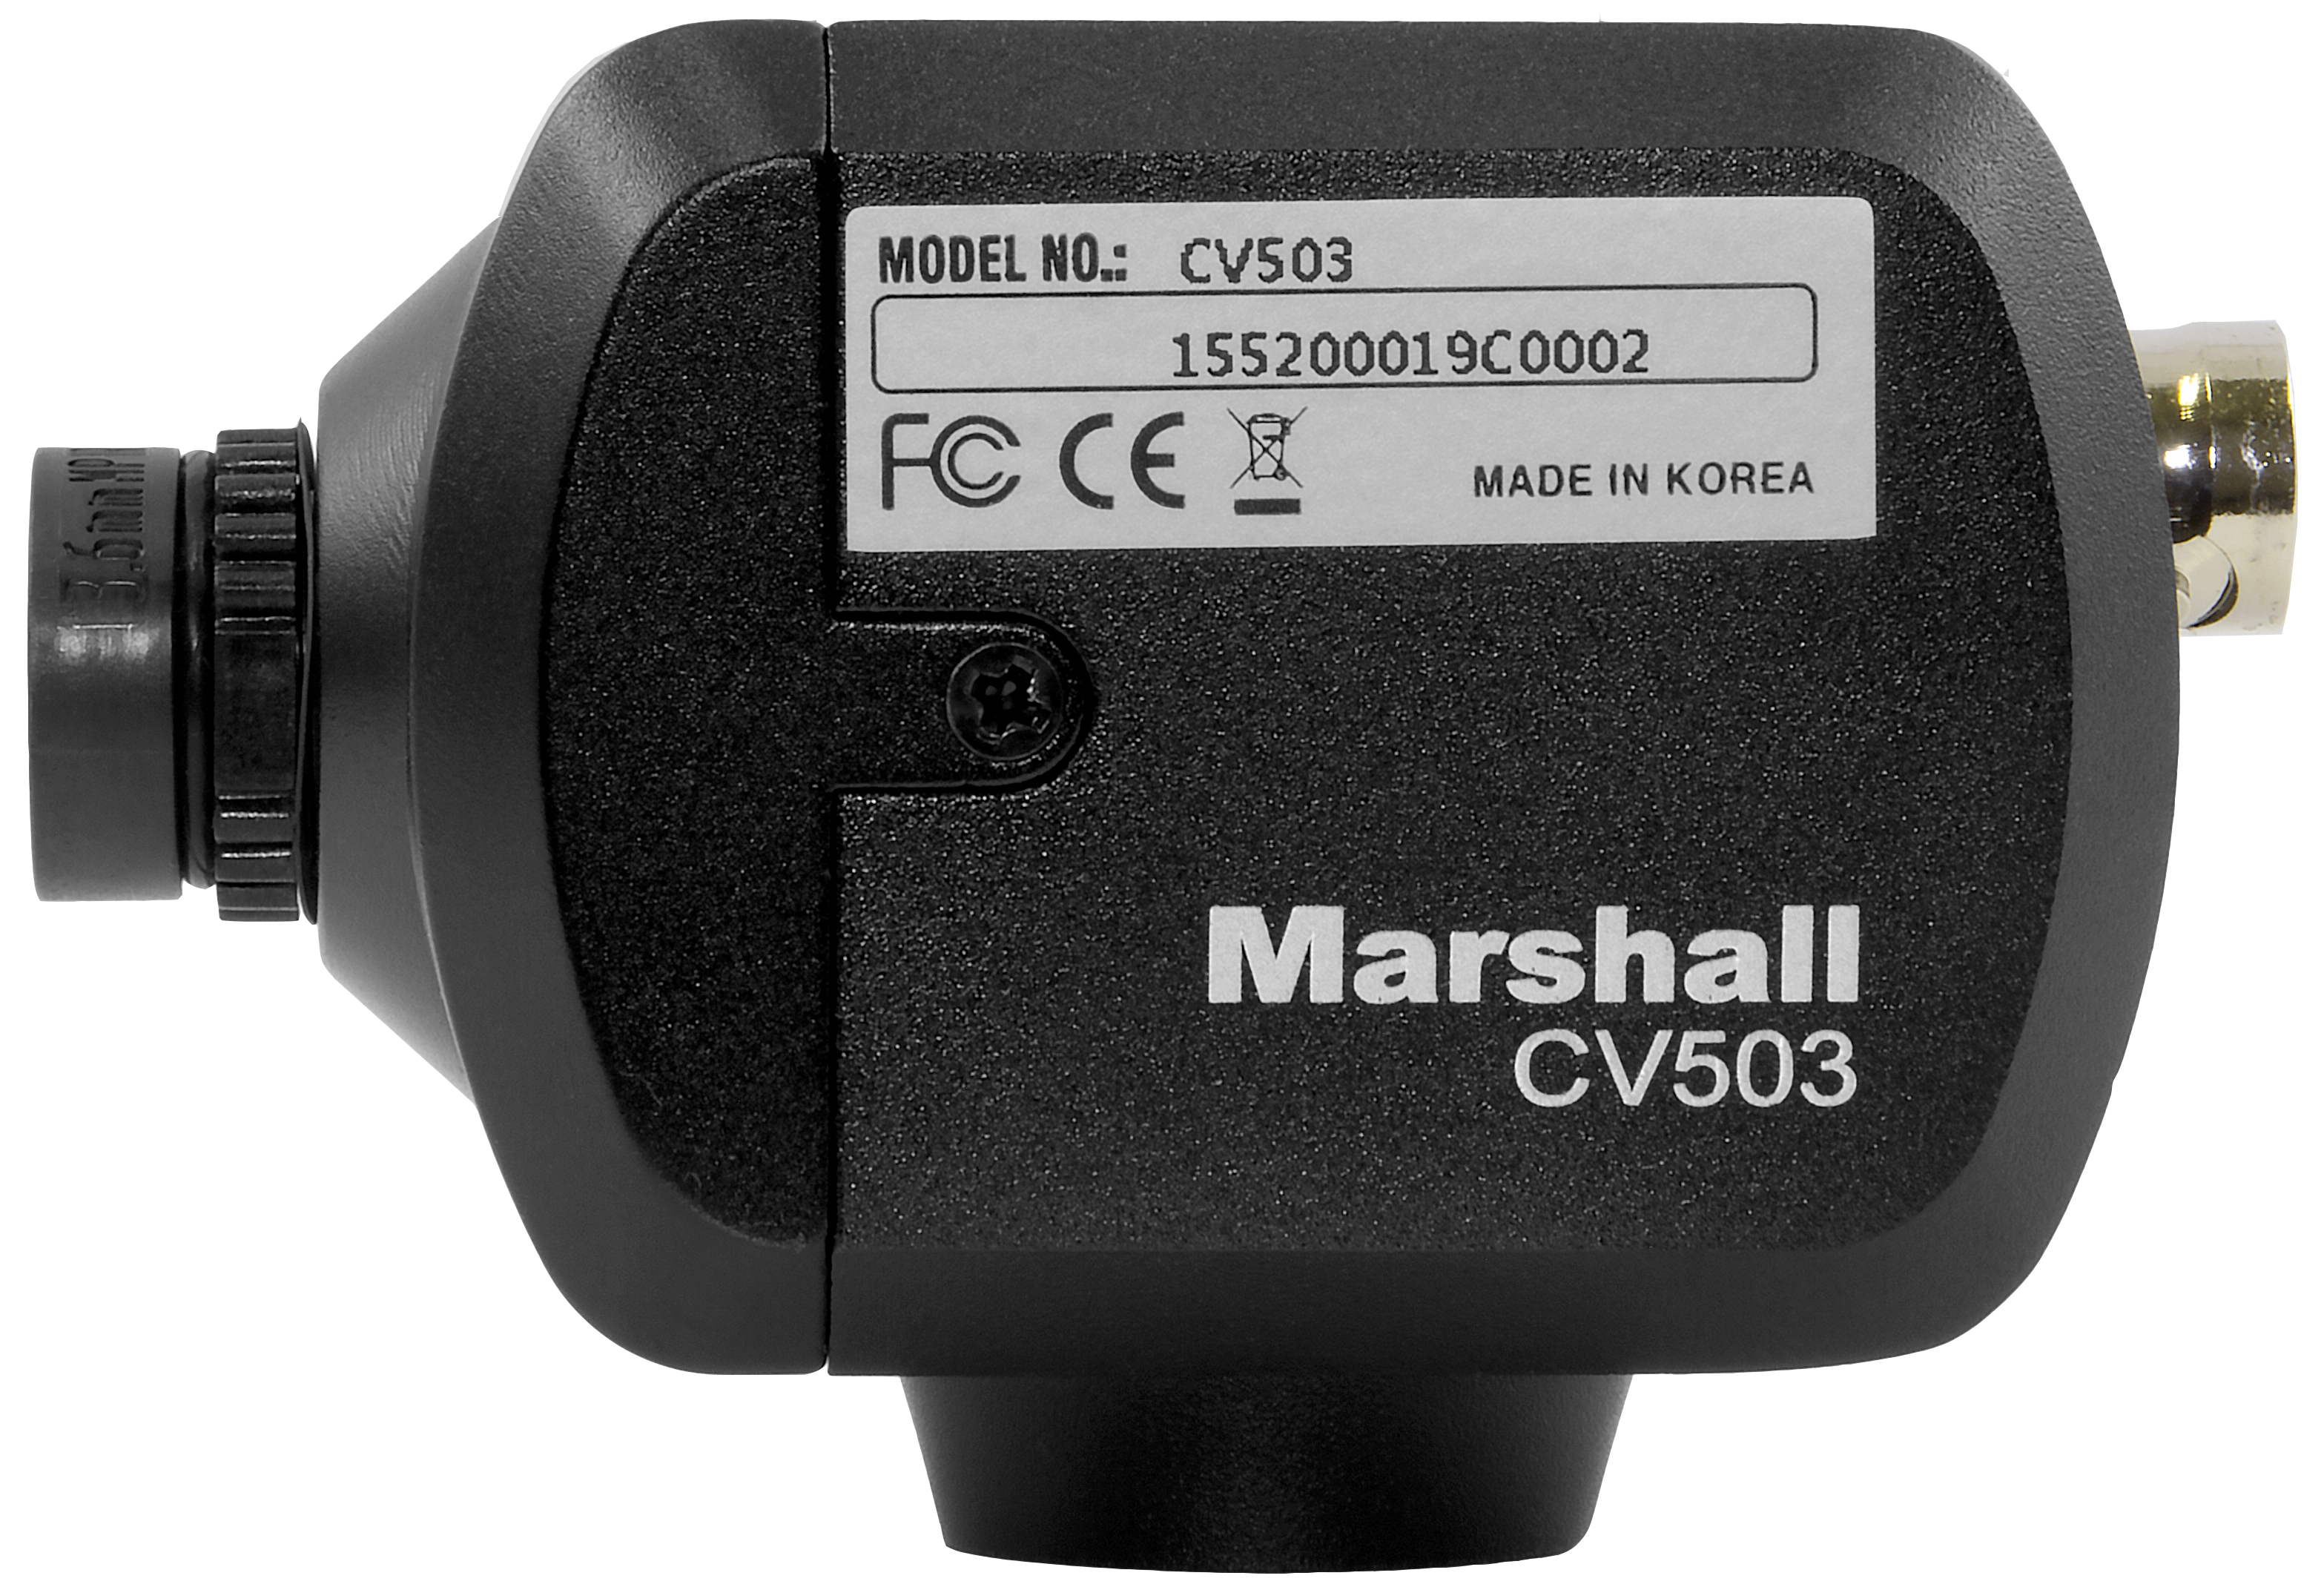 CV503 Miniature Full-HD Camera